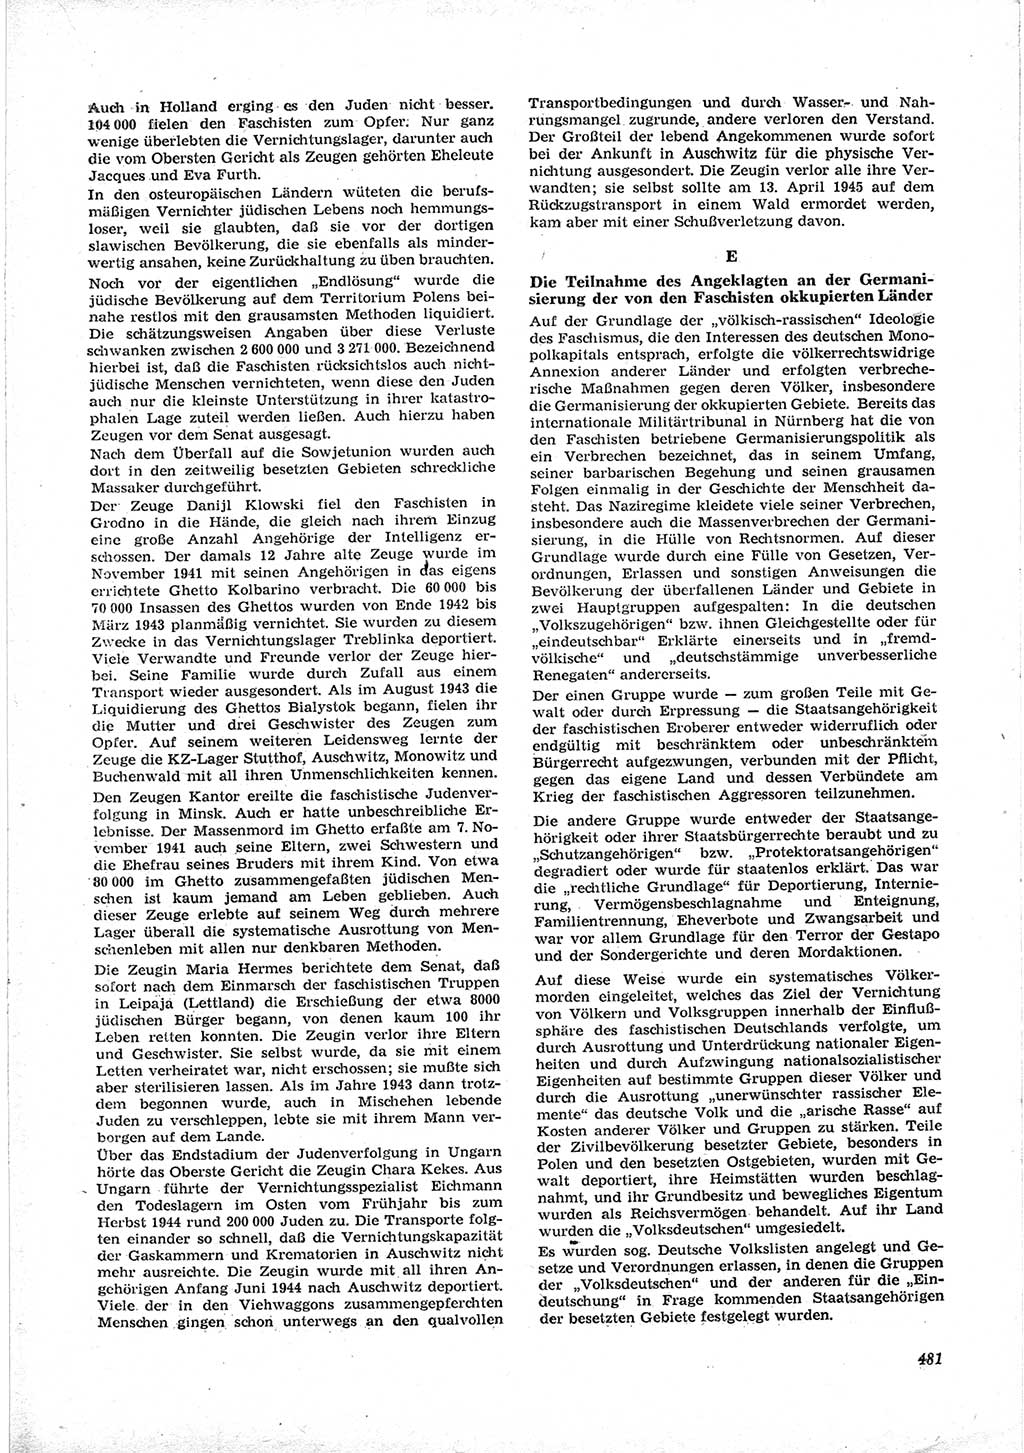 Neue Justiz (NJ), Zeitschrift für Recht und Rechtswissenschaft [Deutsche Demokratische Republik (DDR)], 17. Jahrgang 1963, Seite 481 (NJ DDR 1963, S. 481)